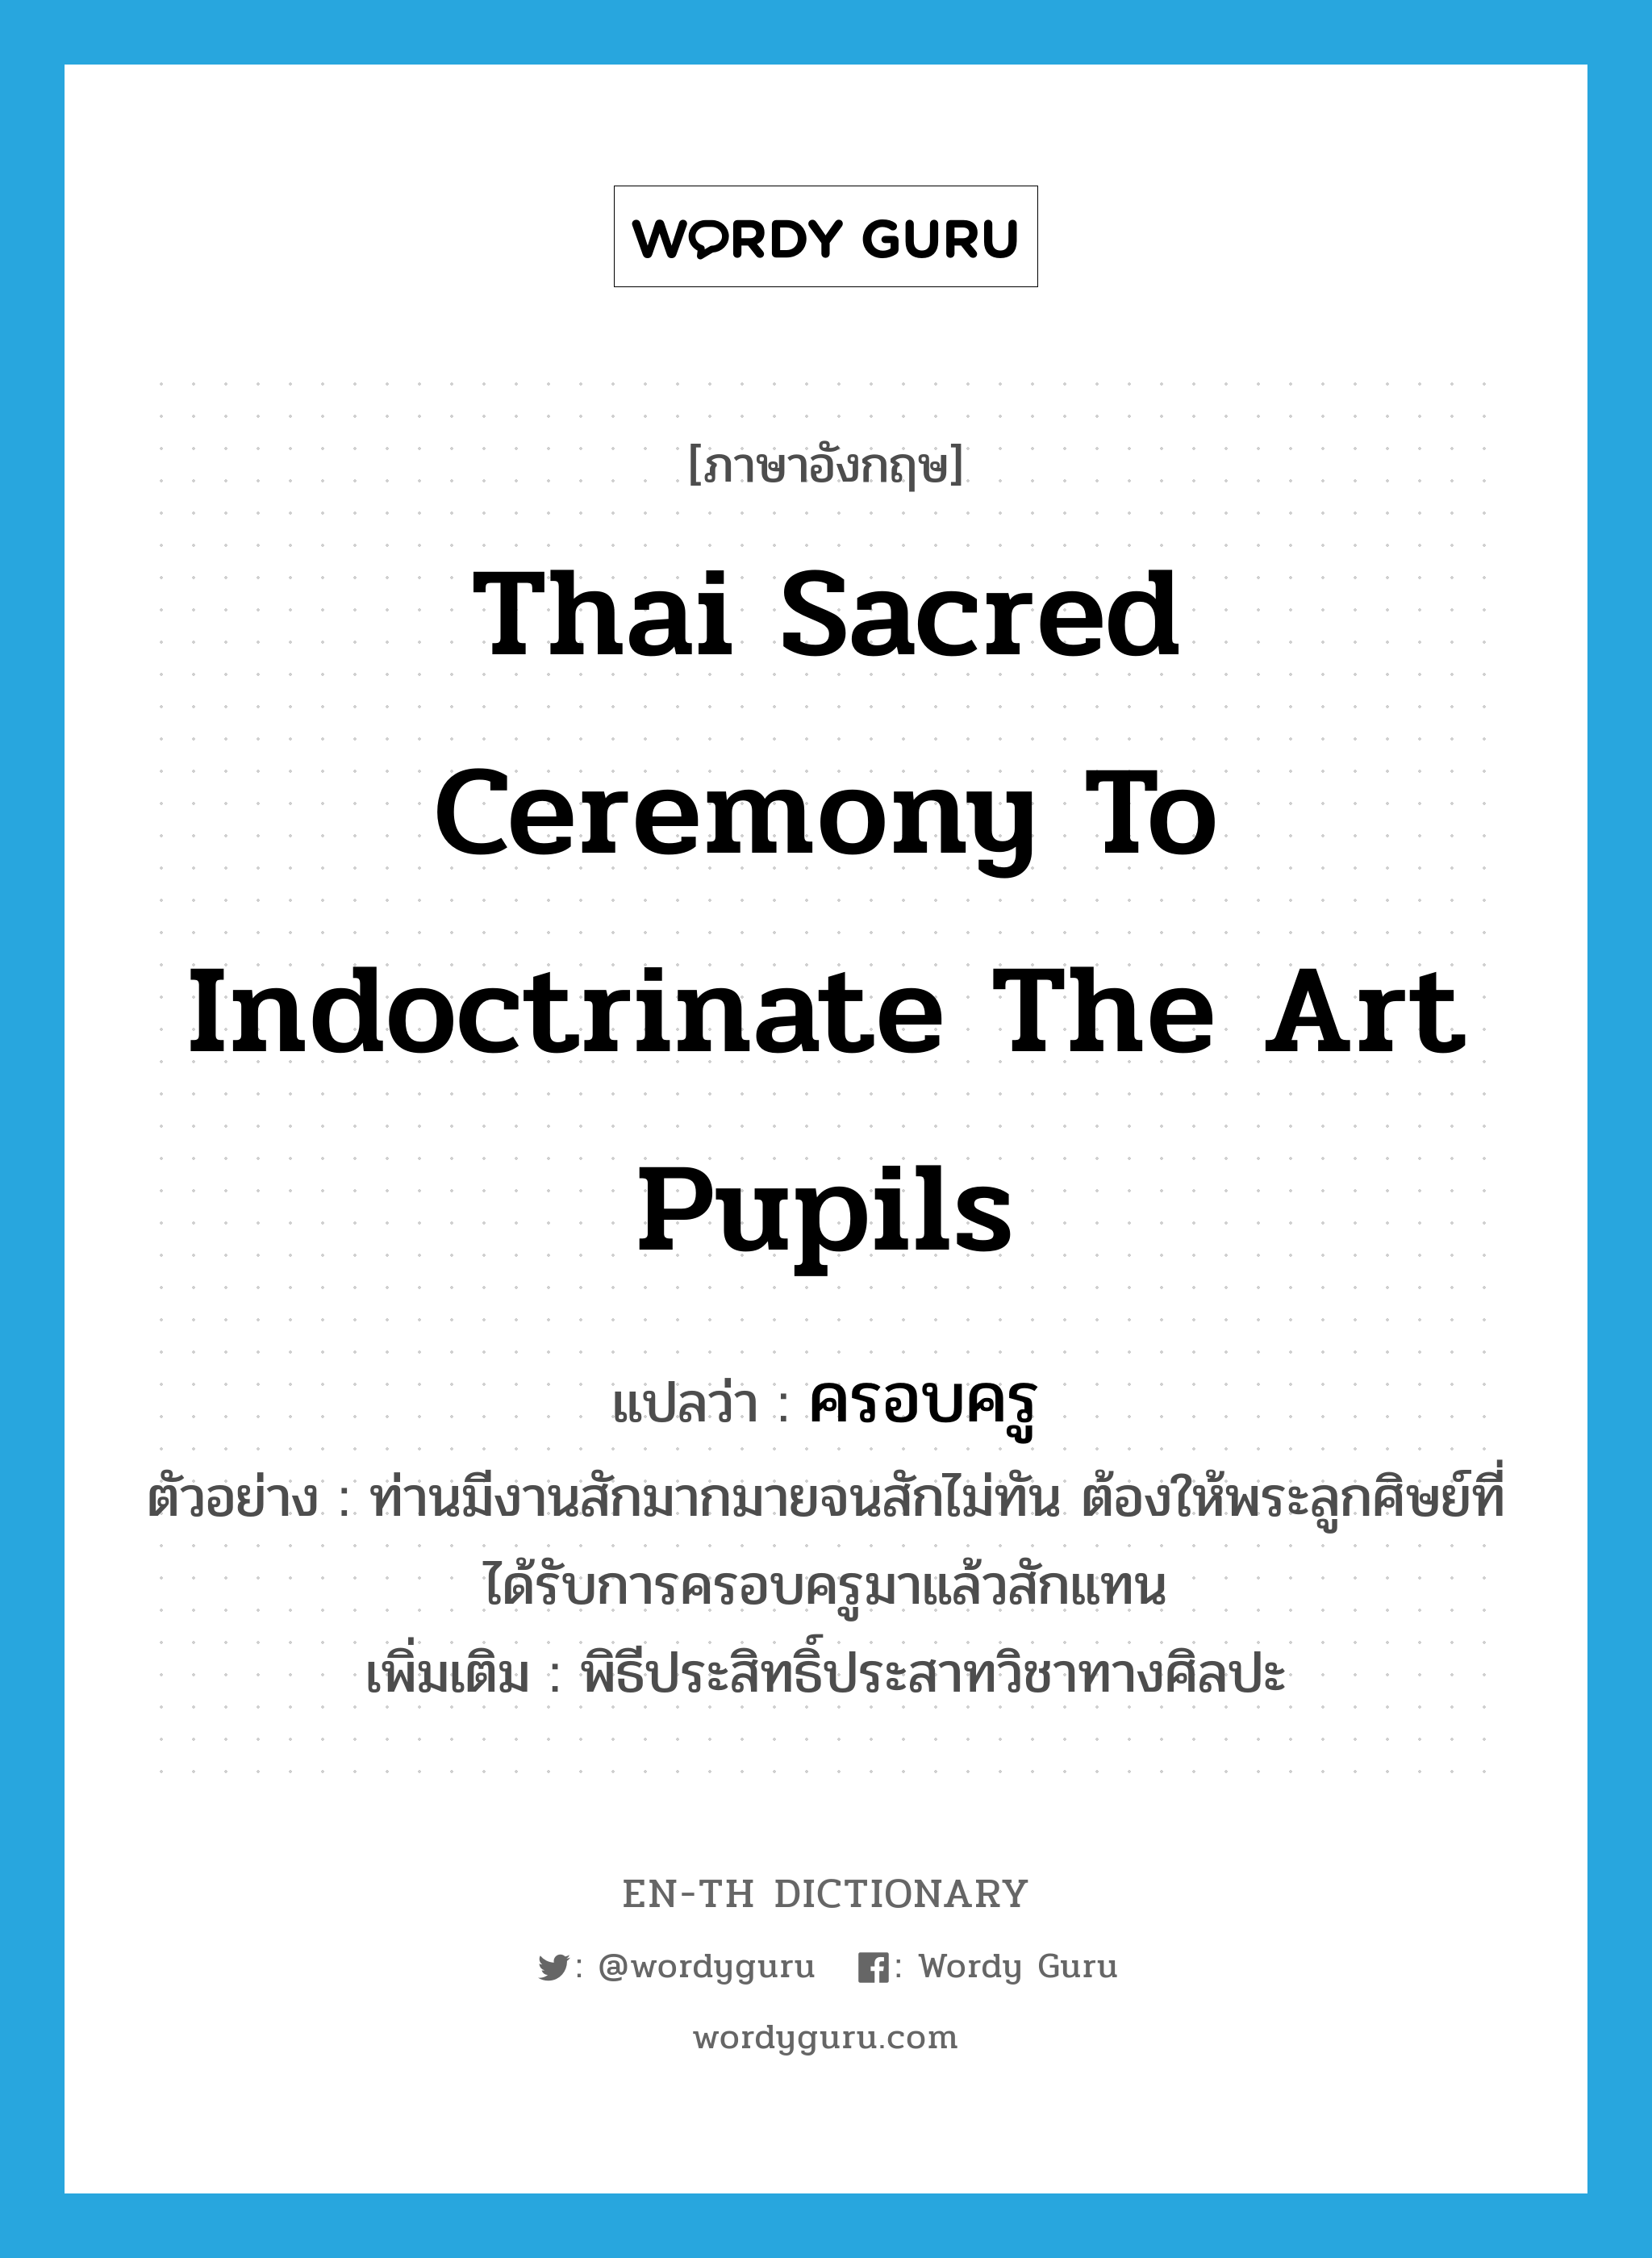 ครอบครู ภาษาอังกฤษ?, คำศัพท์ภาษาอังกฤษ ครอบครู แปลว่า Thai sacred ceremony to indoctrinate the art pupils ประเภท N ตัวอย่าง ท่านมีงานสักมากมายจนสักไม่ทัน ต้องให้พระลูกศิษย์ที่ได้รับการครอบครูมาแล้วสักแทน เพิ่มเติม พิธีประสิทธิ์ประสาทวิชาทางศิลปะ หมวด N